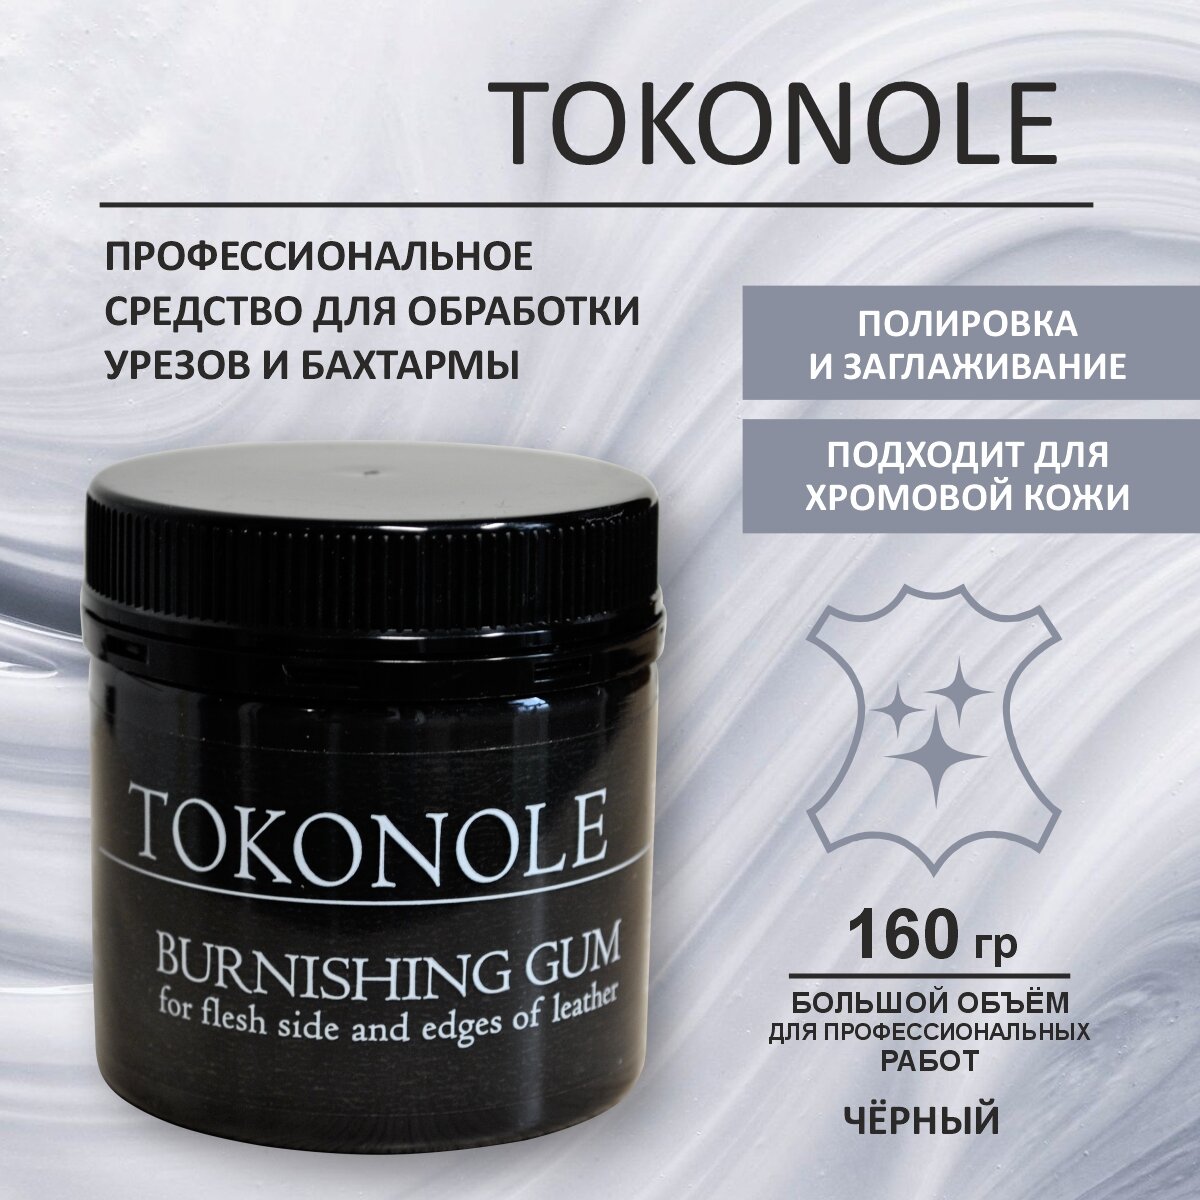 Средство для обработки уреза и бахтармы Токоноле / Tokonole черный